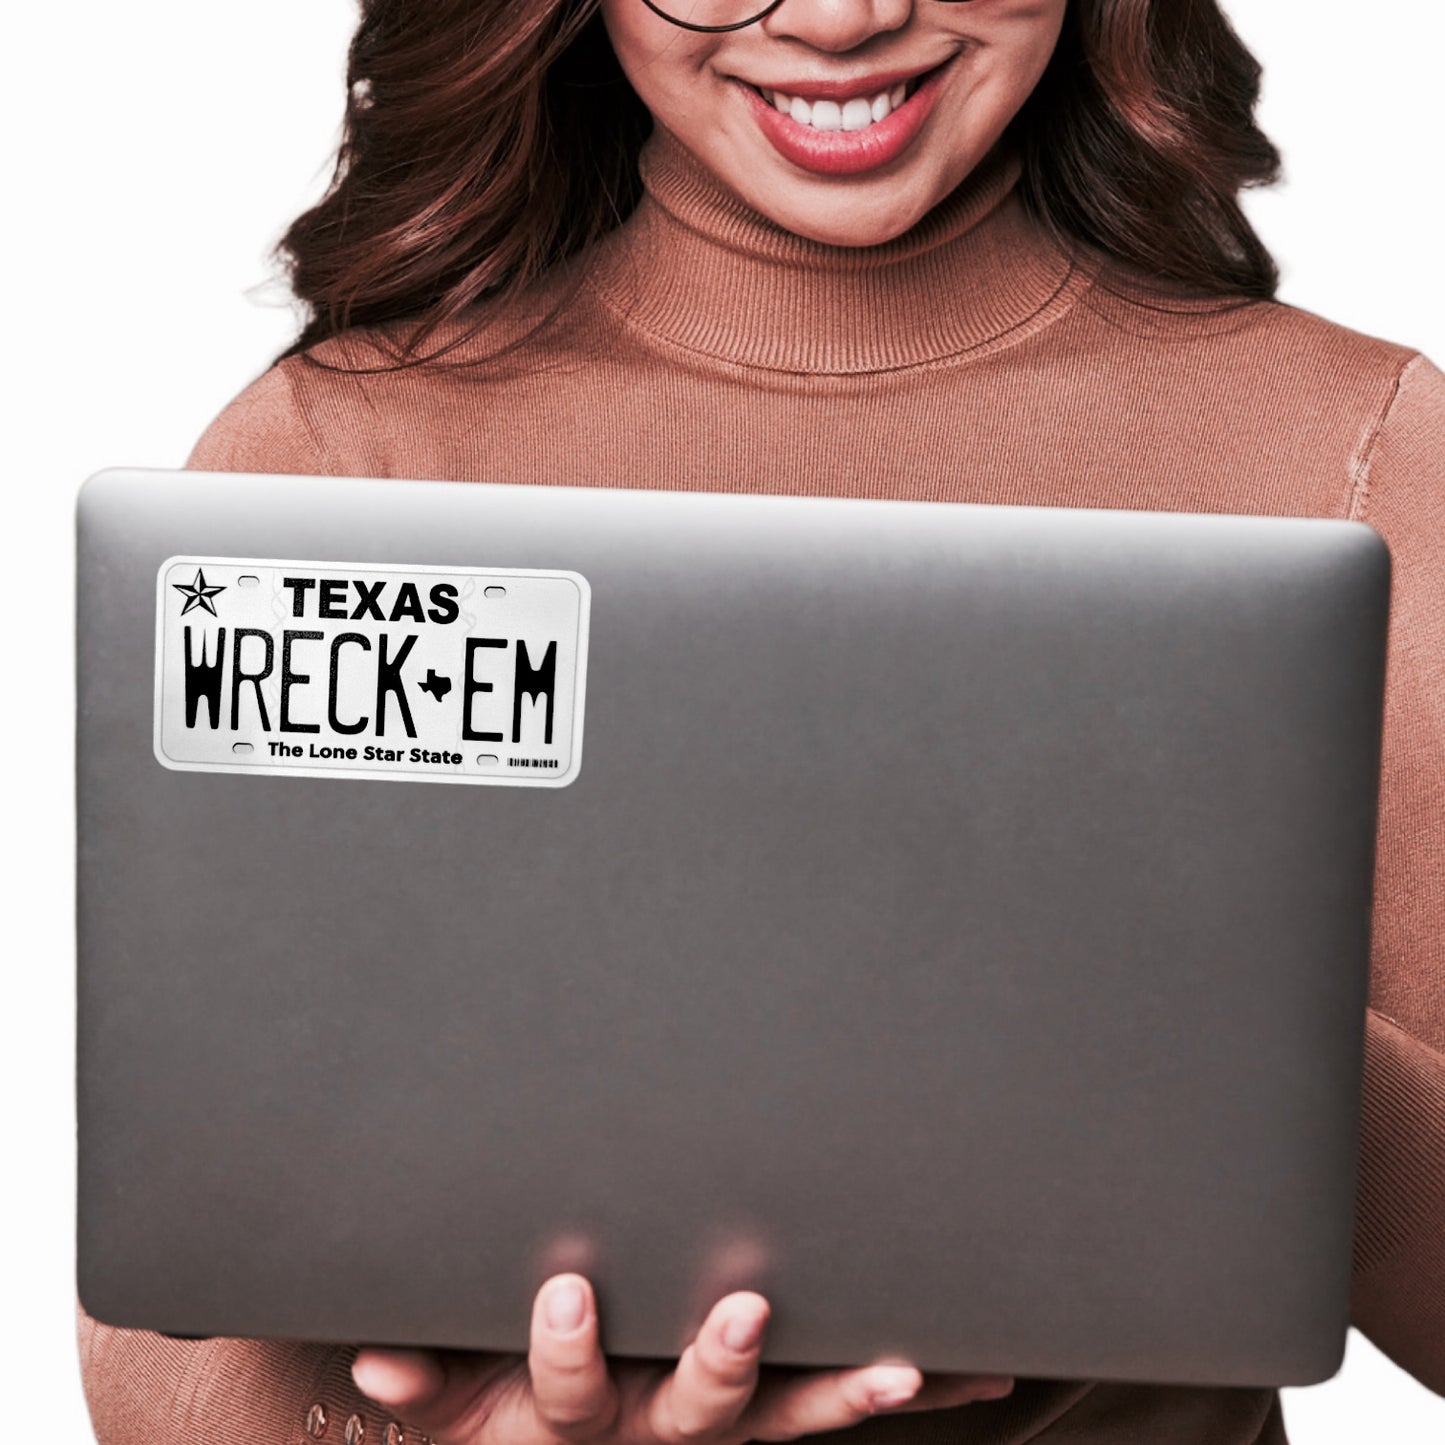 "Wreck 'Em" | Texas Tech Pride License Plate Sticker